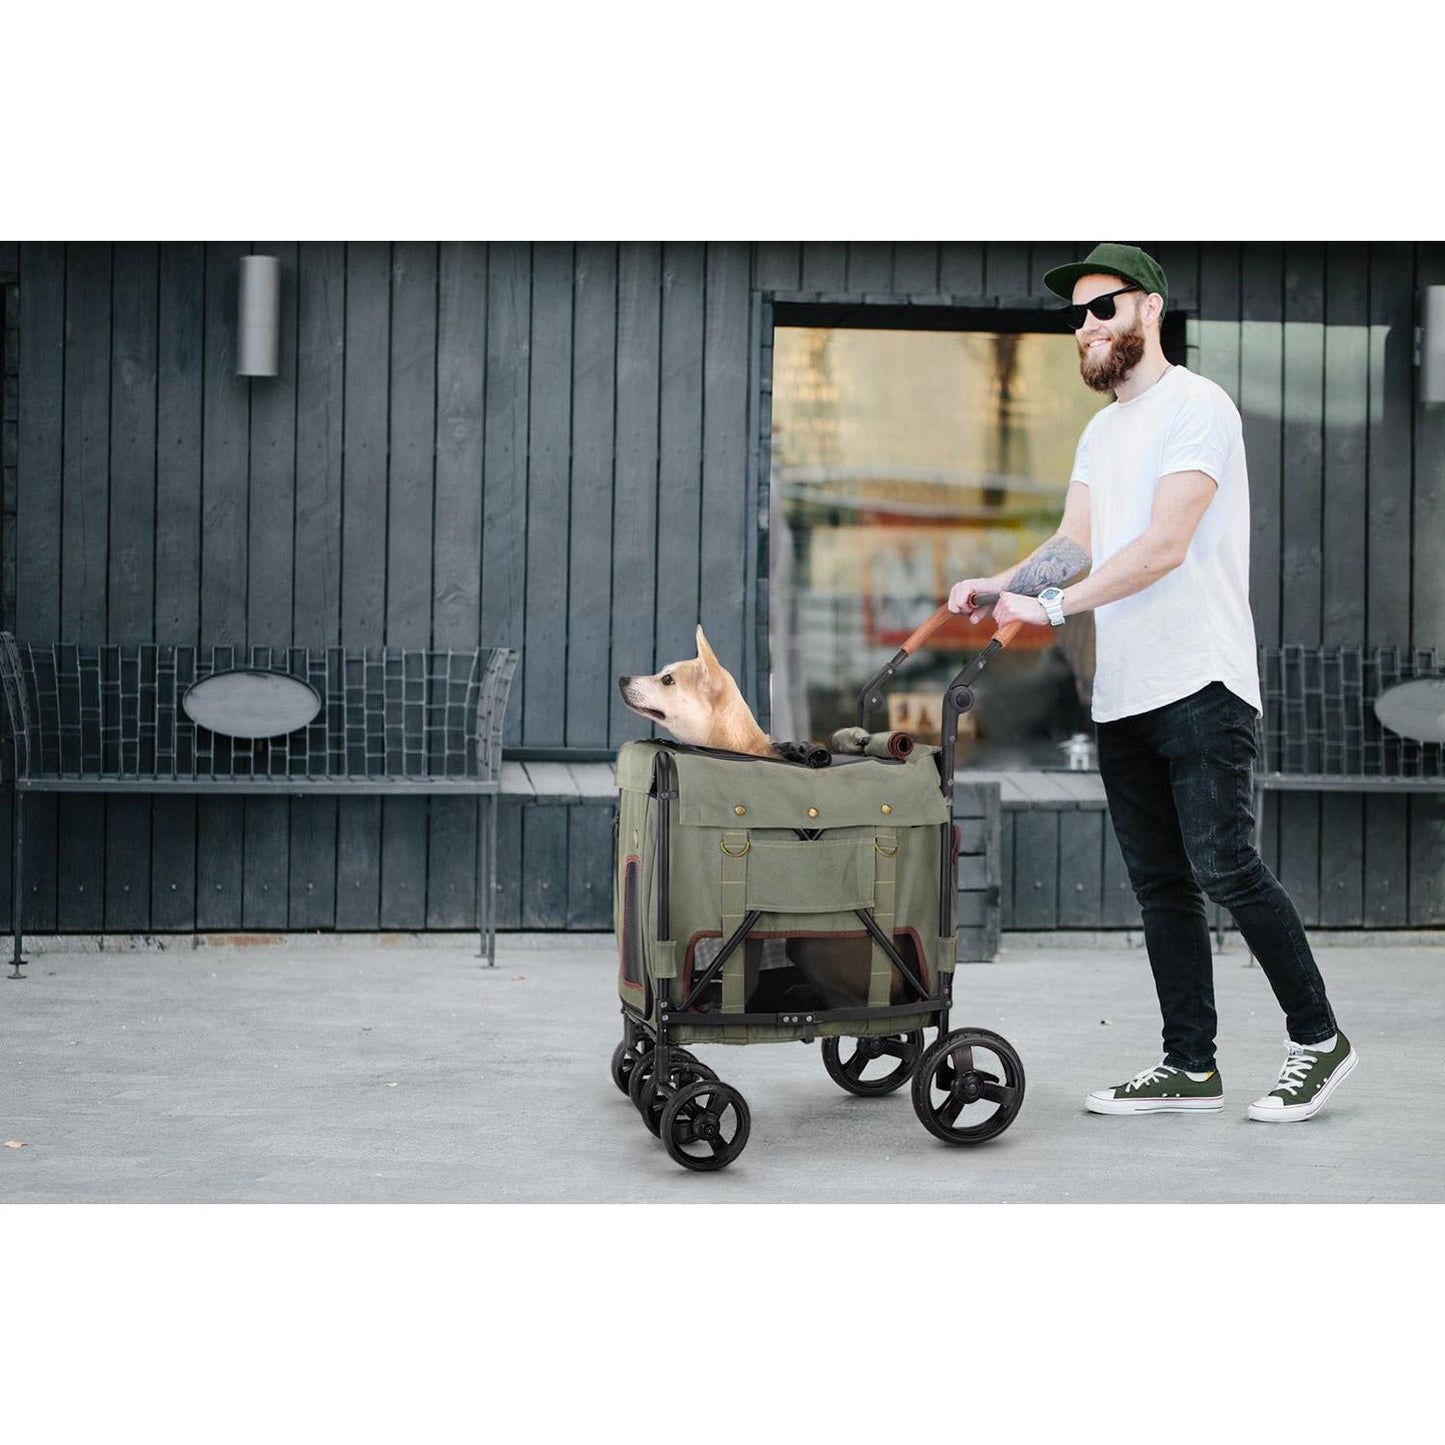 Ibiyaya® Hundebuggy "Gentle Giant Pet Wagon" - Askmy4Cats